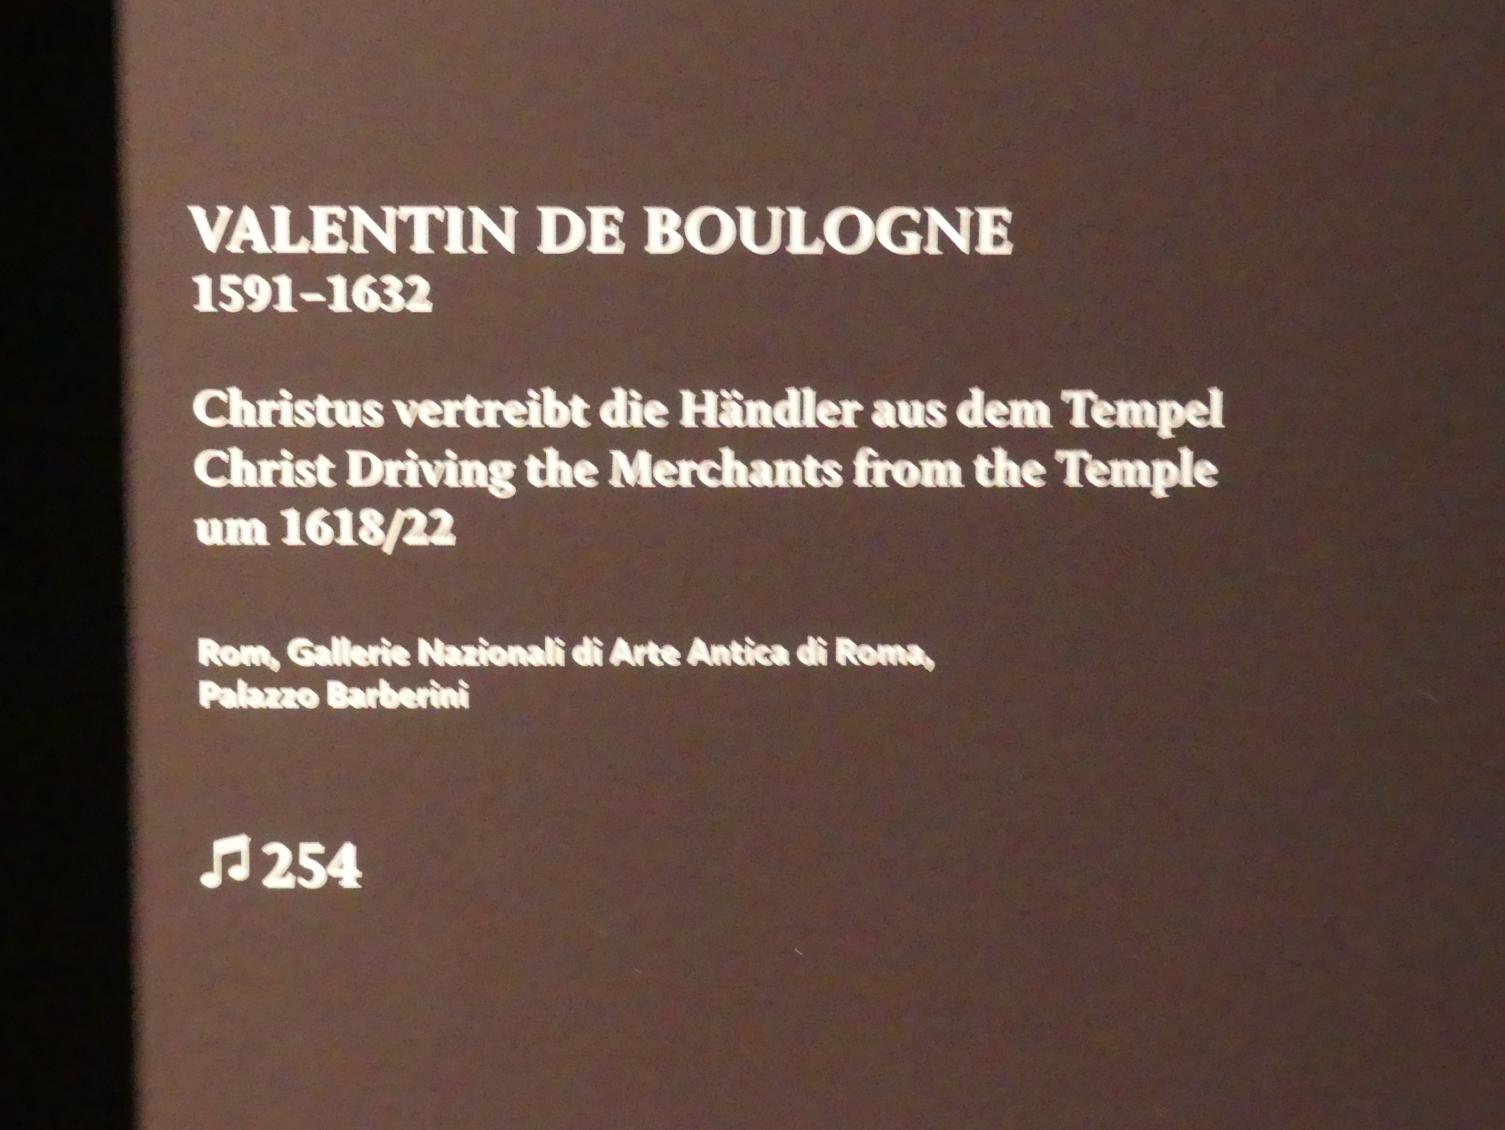 Valentin de Boulogne (1614–1631), Christus vertreibt die Händler aus dem Tempel, München, Alte Pinakothek, Ausstellung "Utrecht, Caravaggio und Europa" vom 17.04.-21.07.2019, Sünder: Vertreibung der Geldwechsler, um 1618–1622, Bild 2/2